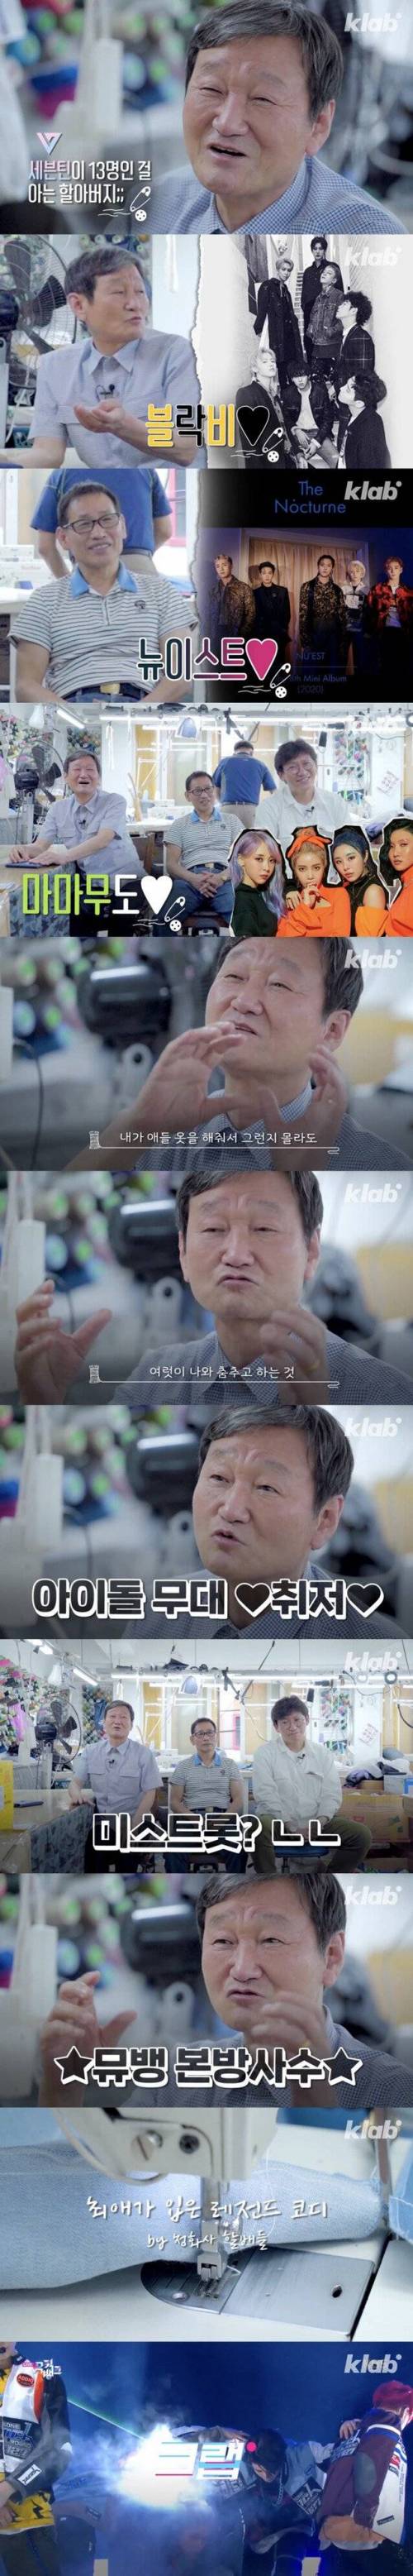 [스압] 아이돌 그룹 무대 의상의 비밀.jpg